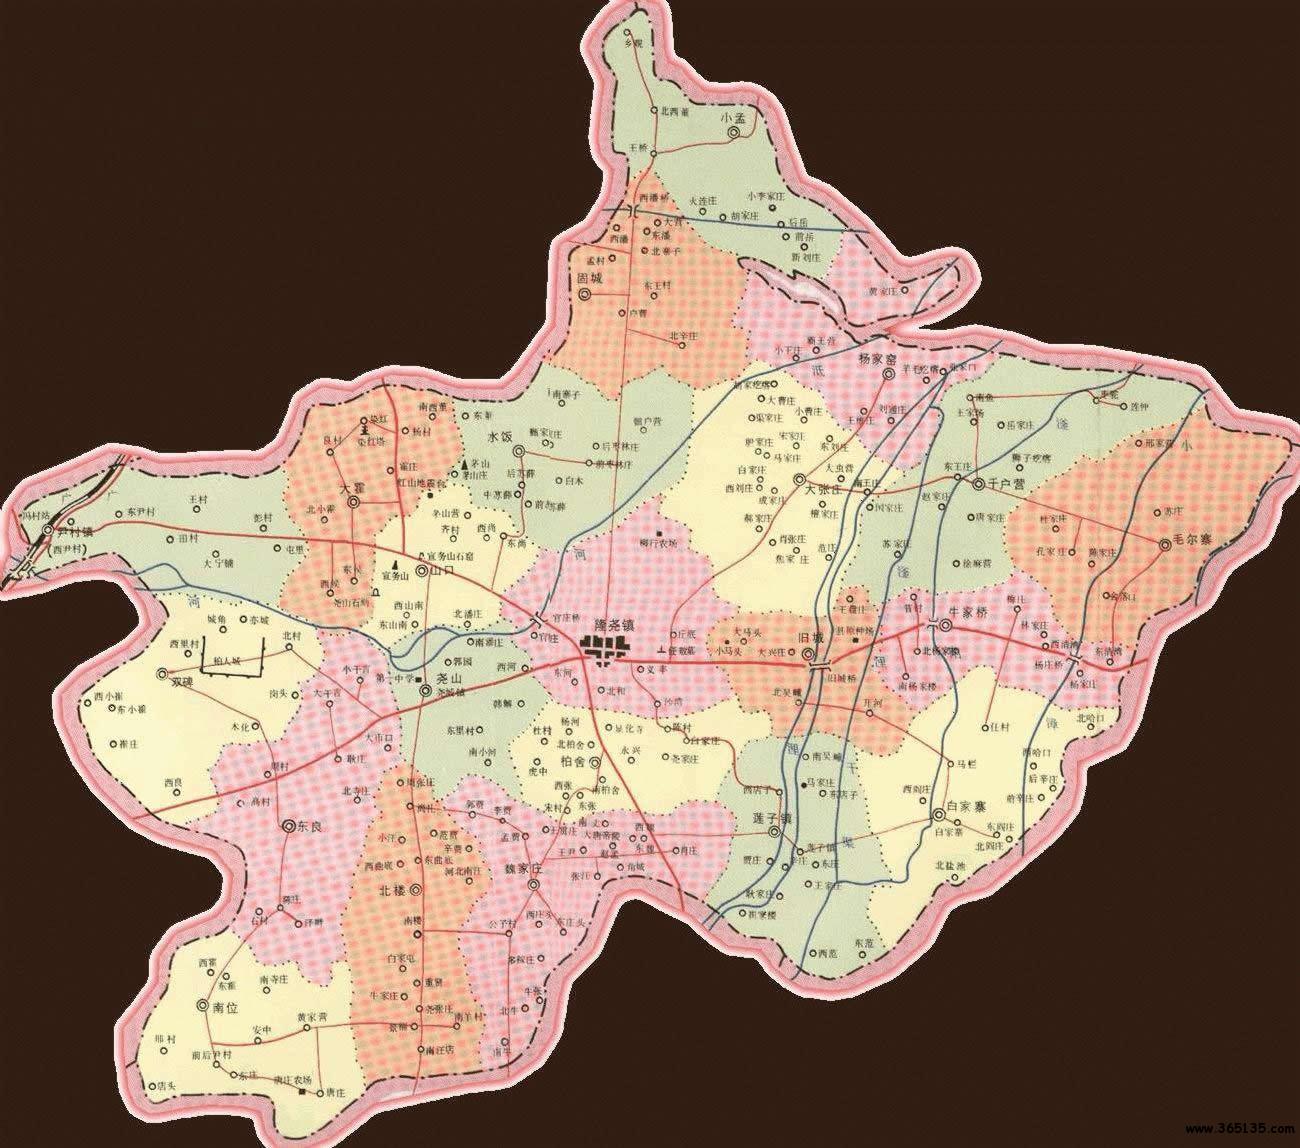 河北 区划地图 >> 隆尧县行政区划图